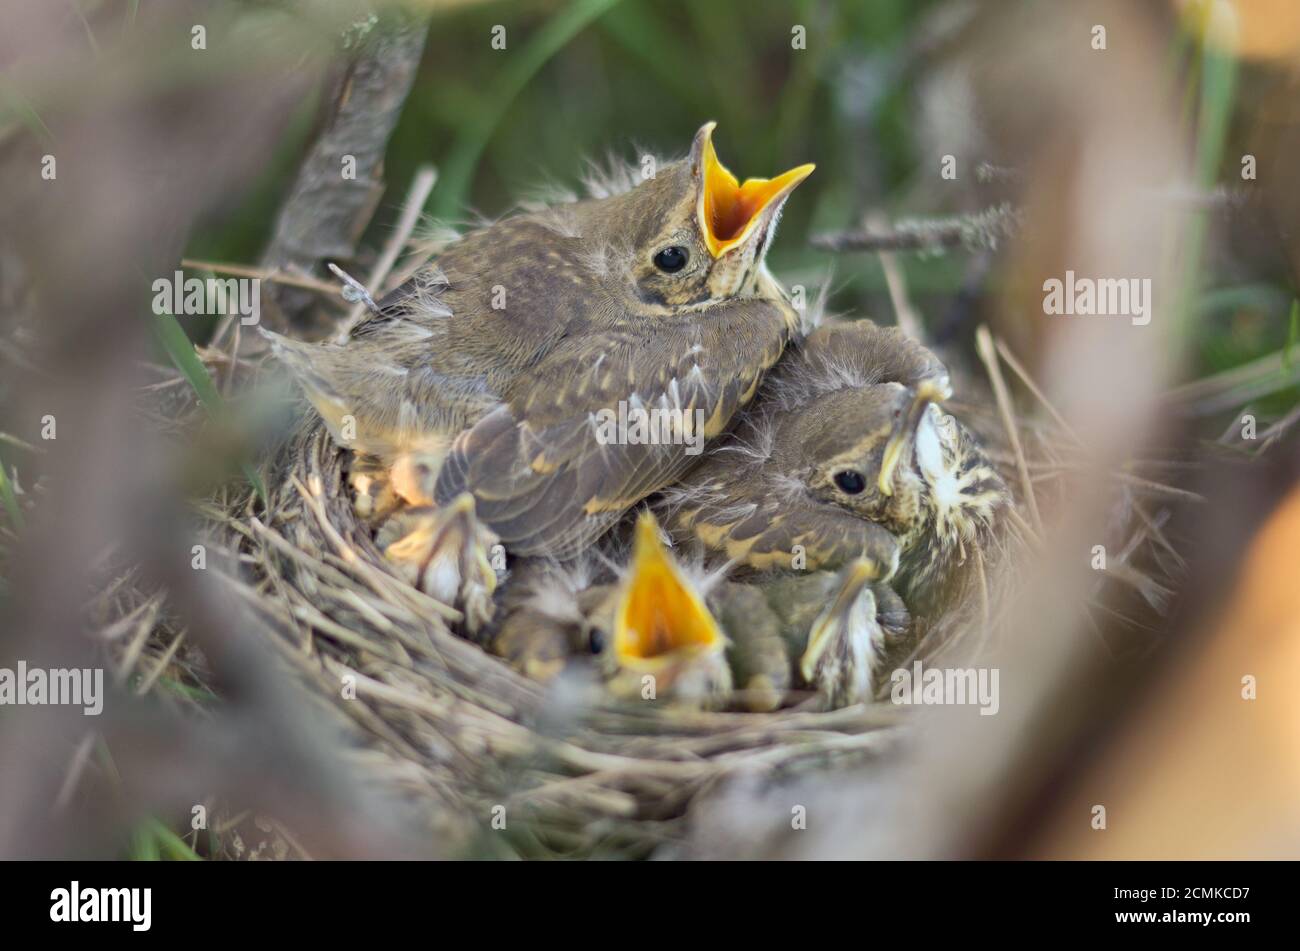 Jungvögel einer Singdrossel (Turdus philomelos) in ihrem Nest in ihrem natürlichen Lebensraum. Fauna der Ukraine. Geringe Schärfentiefe, Nahaufnahme. Stockfoto